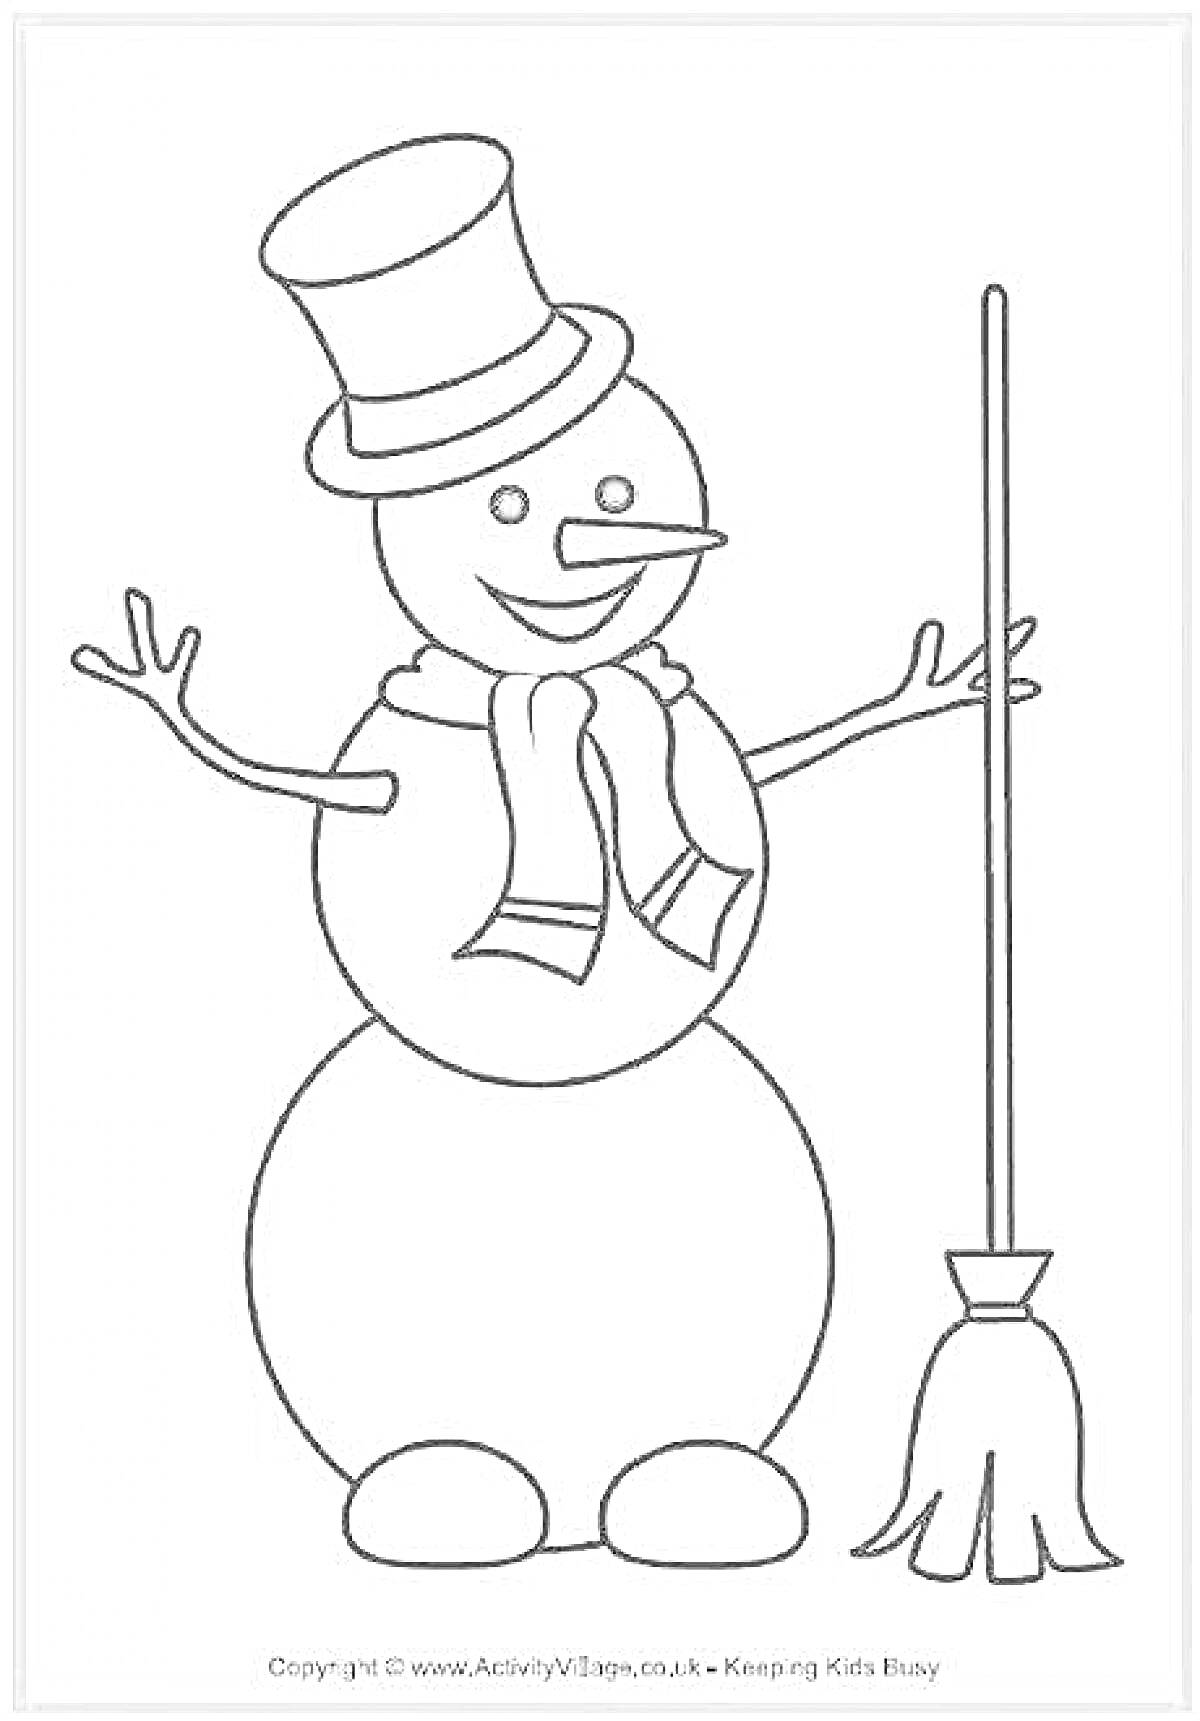 Снеговик с метлой в шляпе и шарфе